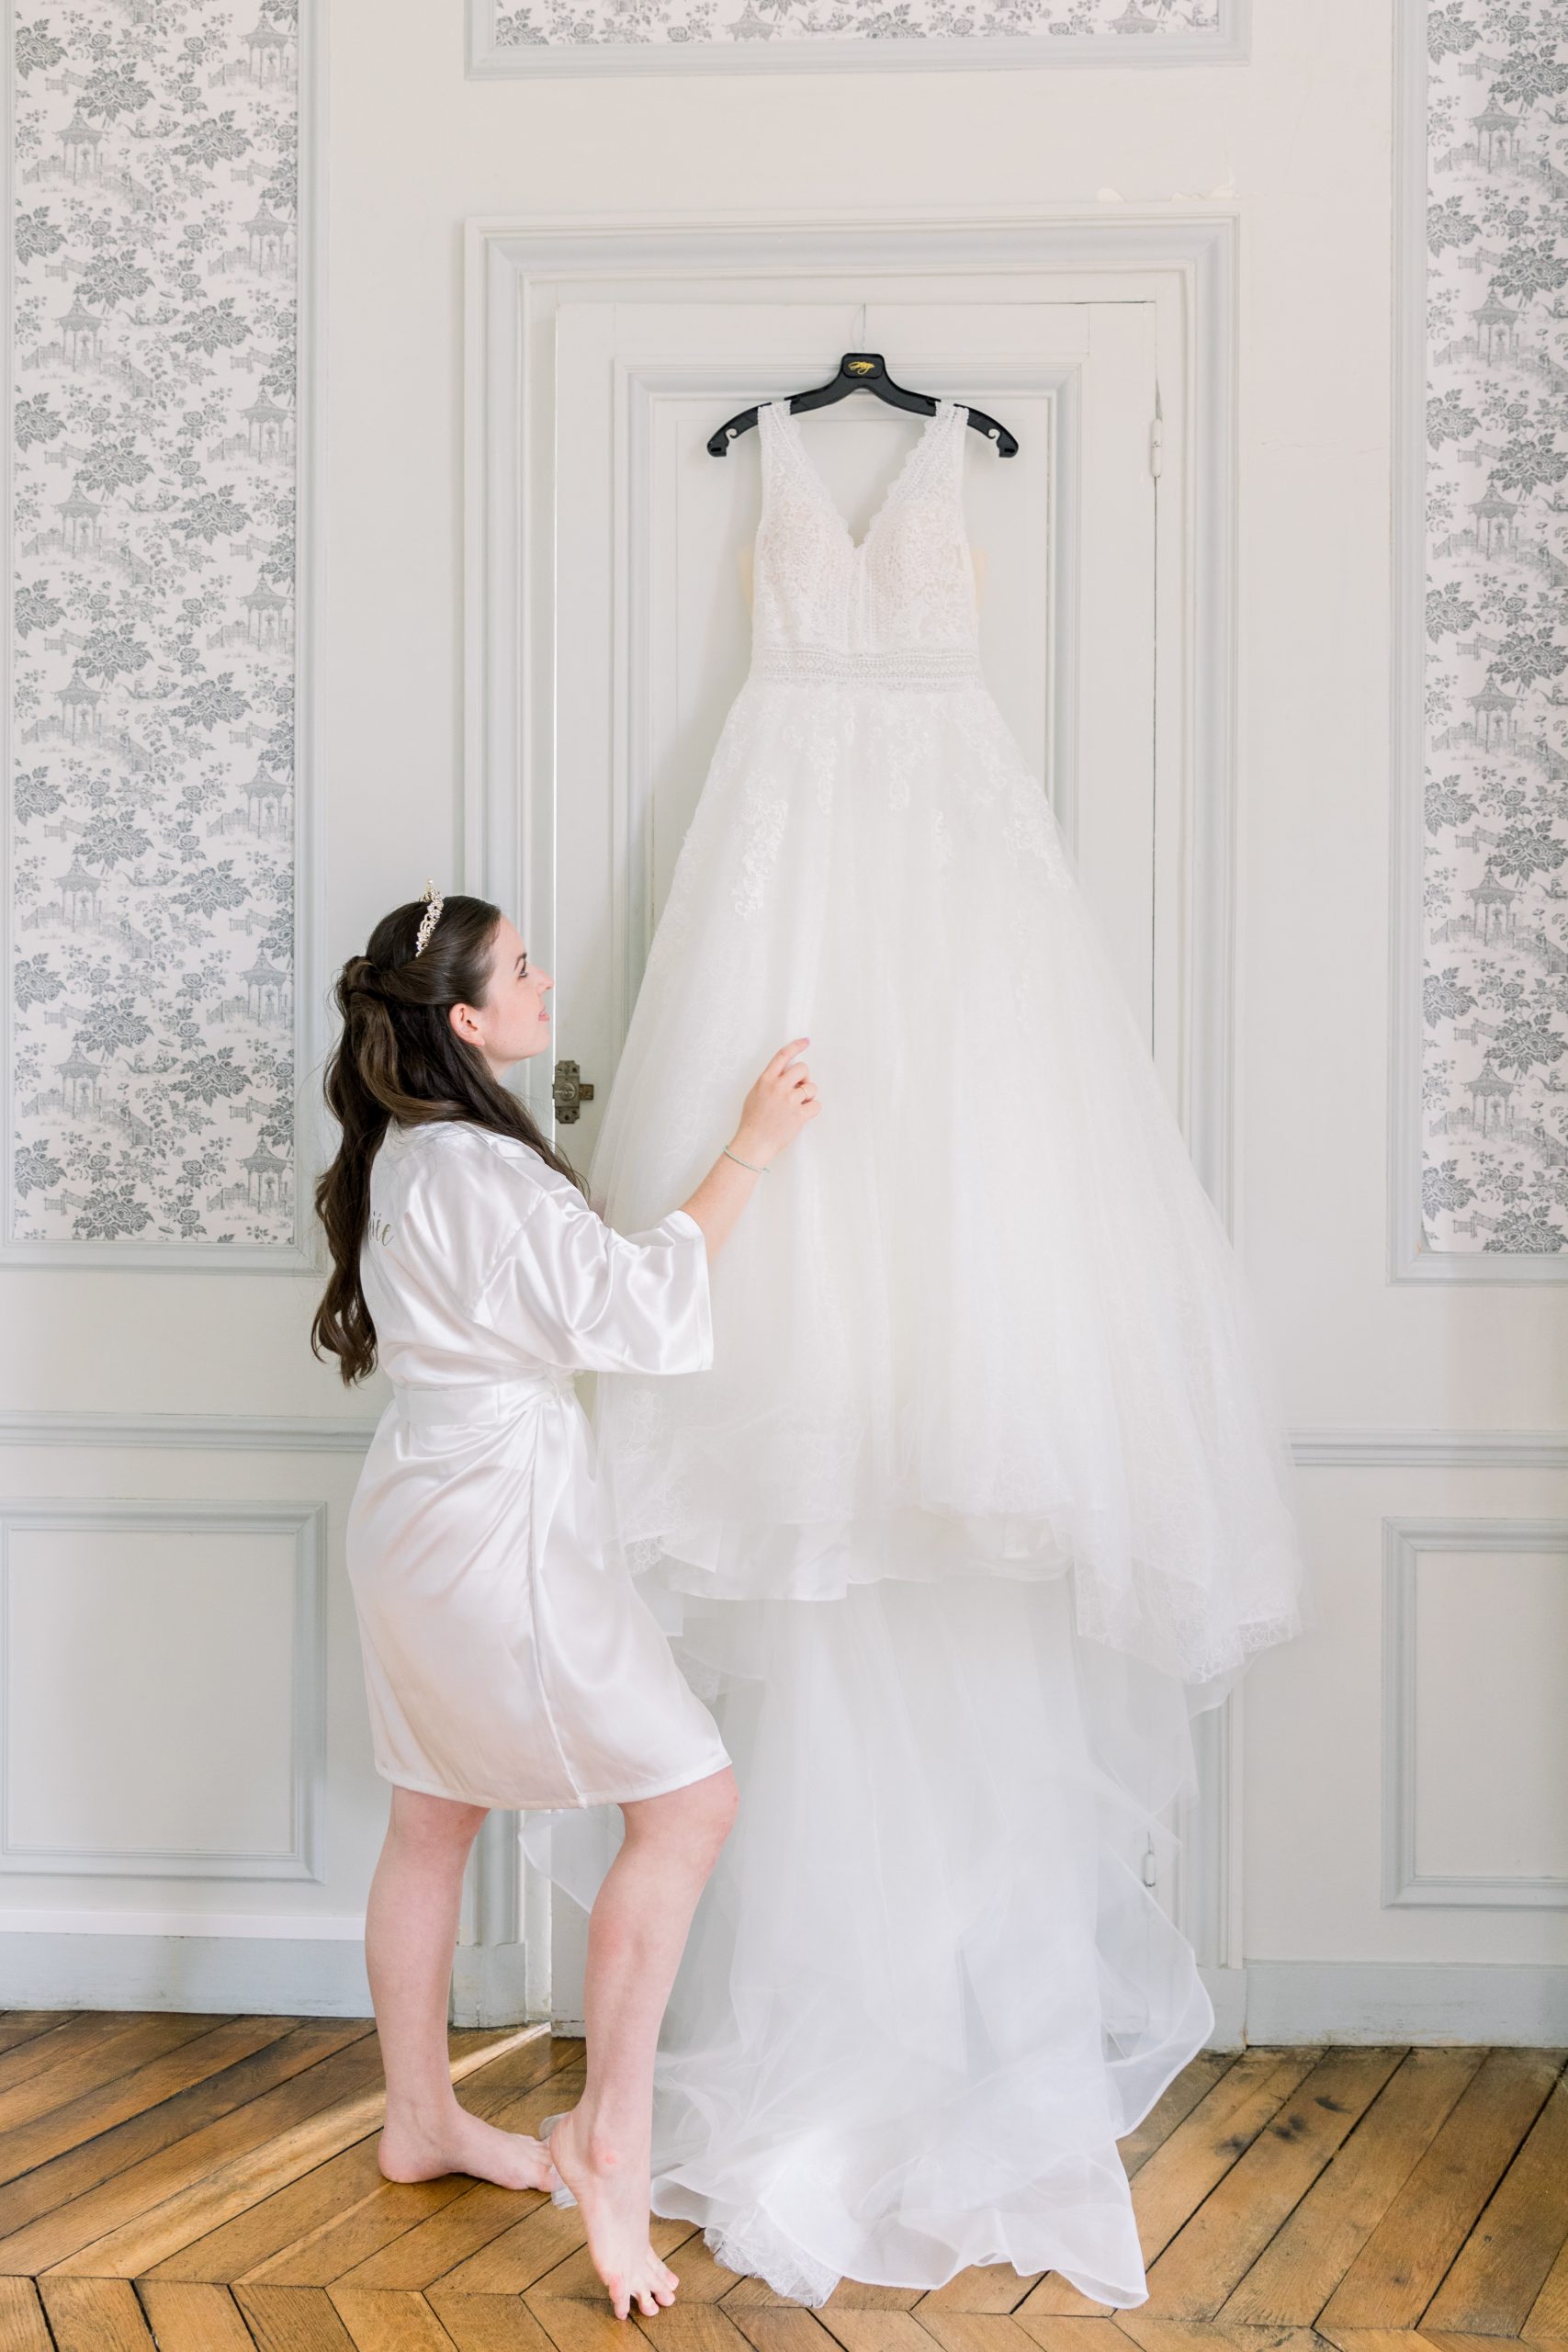 Justine Huette Wedding planner haut de gamme Paris/Île-de-France - Chateau de Dangu